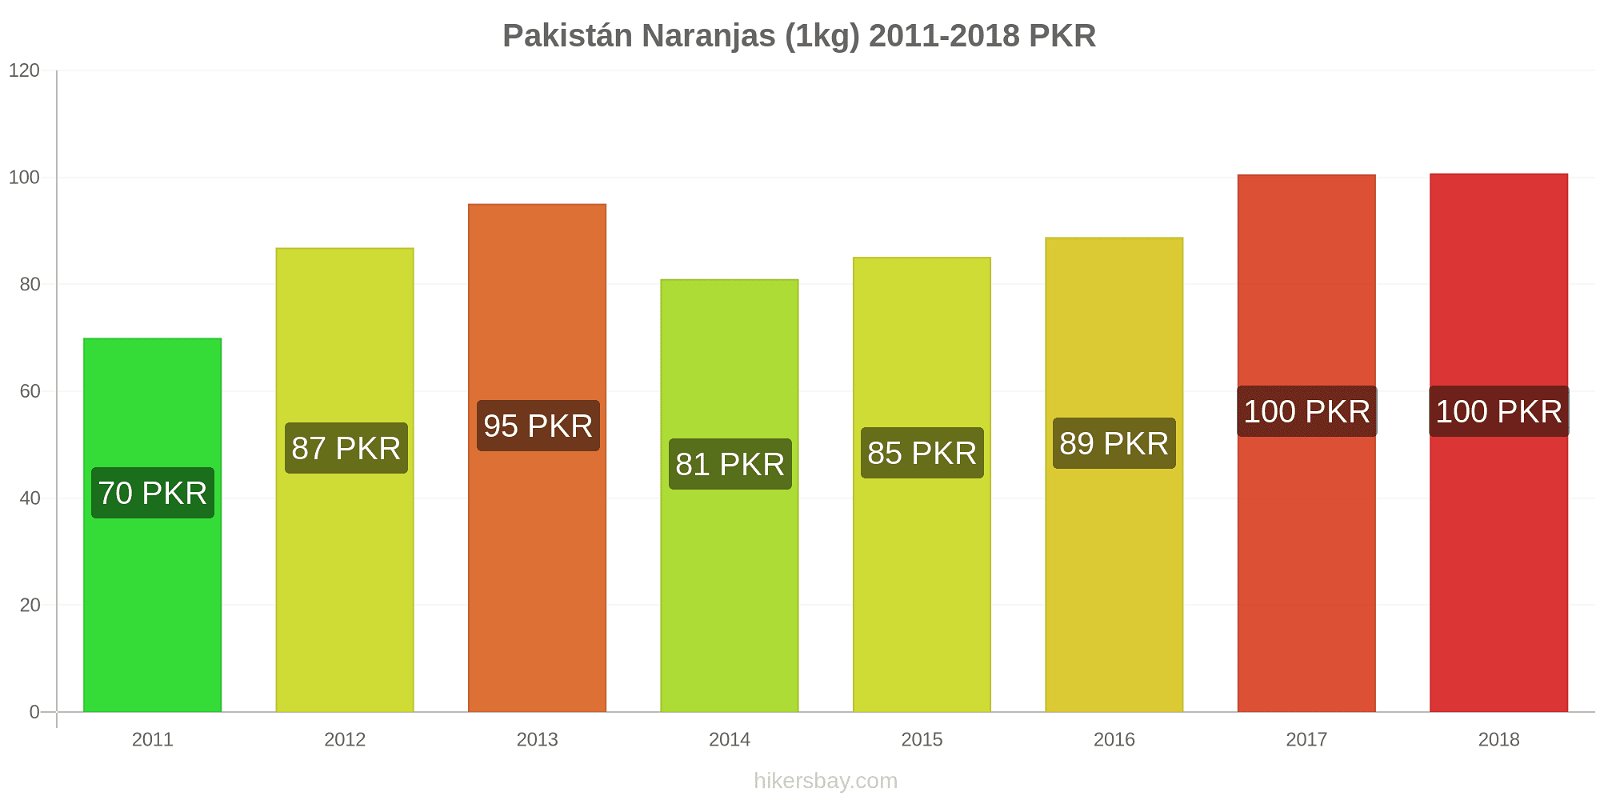 Pakistán cambios de precios Naranjas (1kg) hikersbay.com